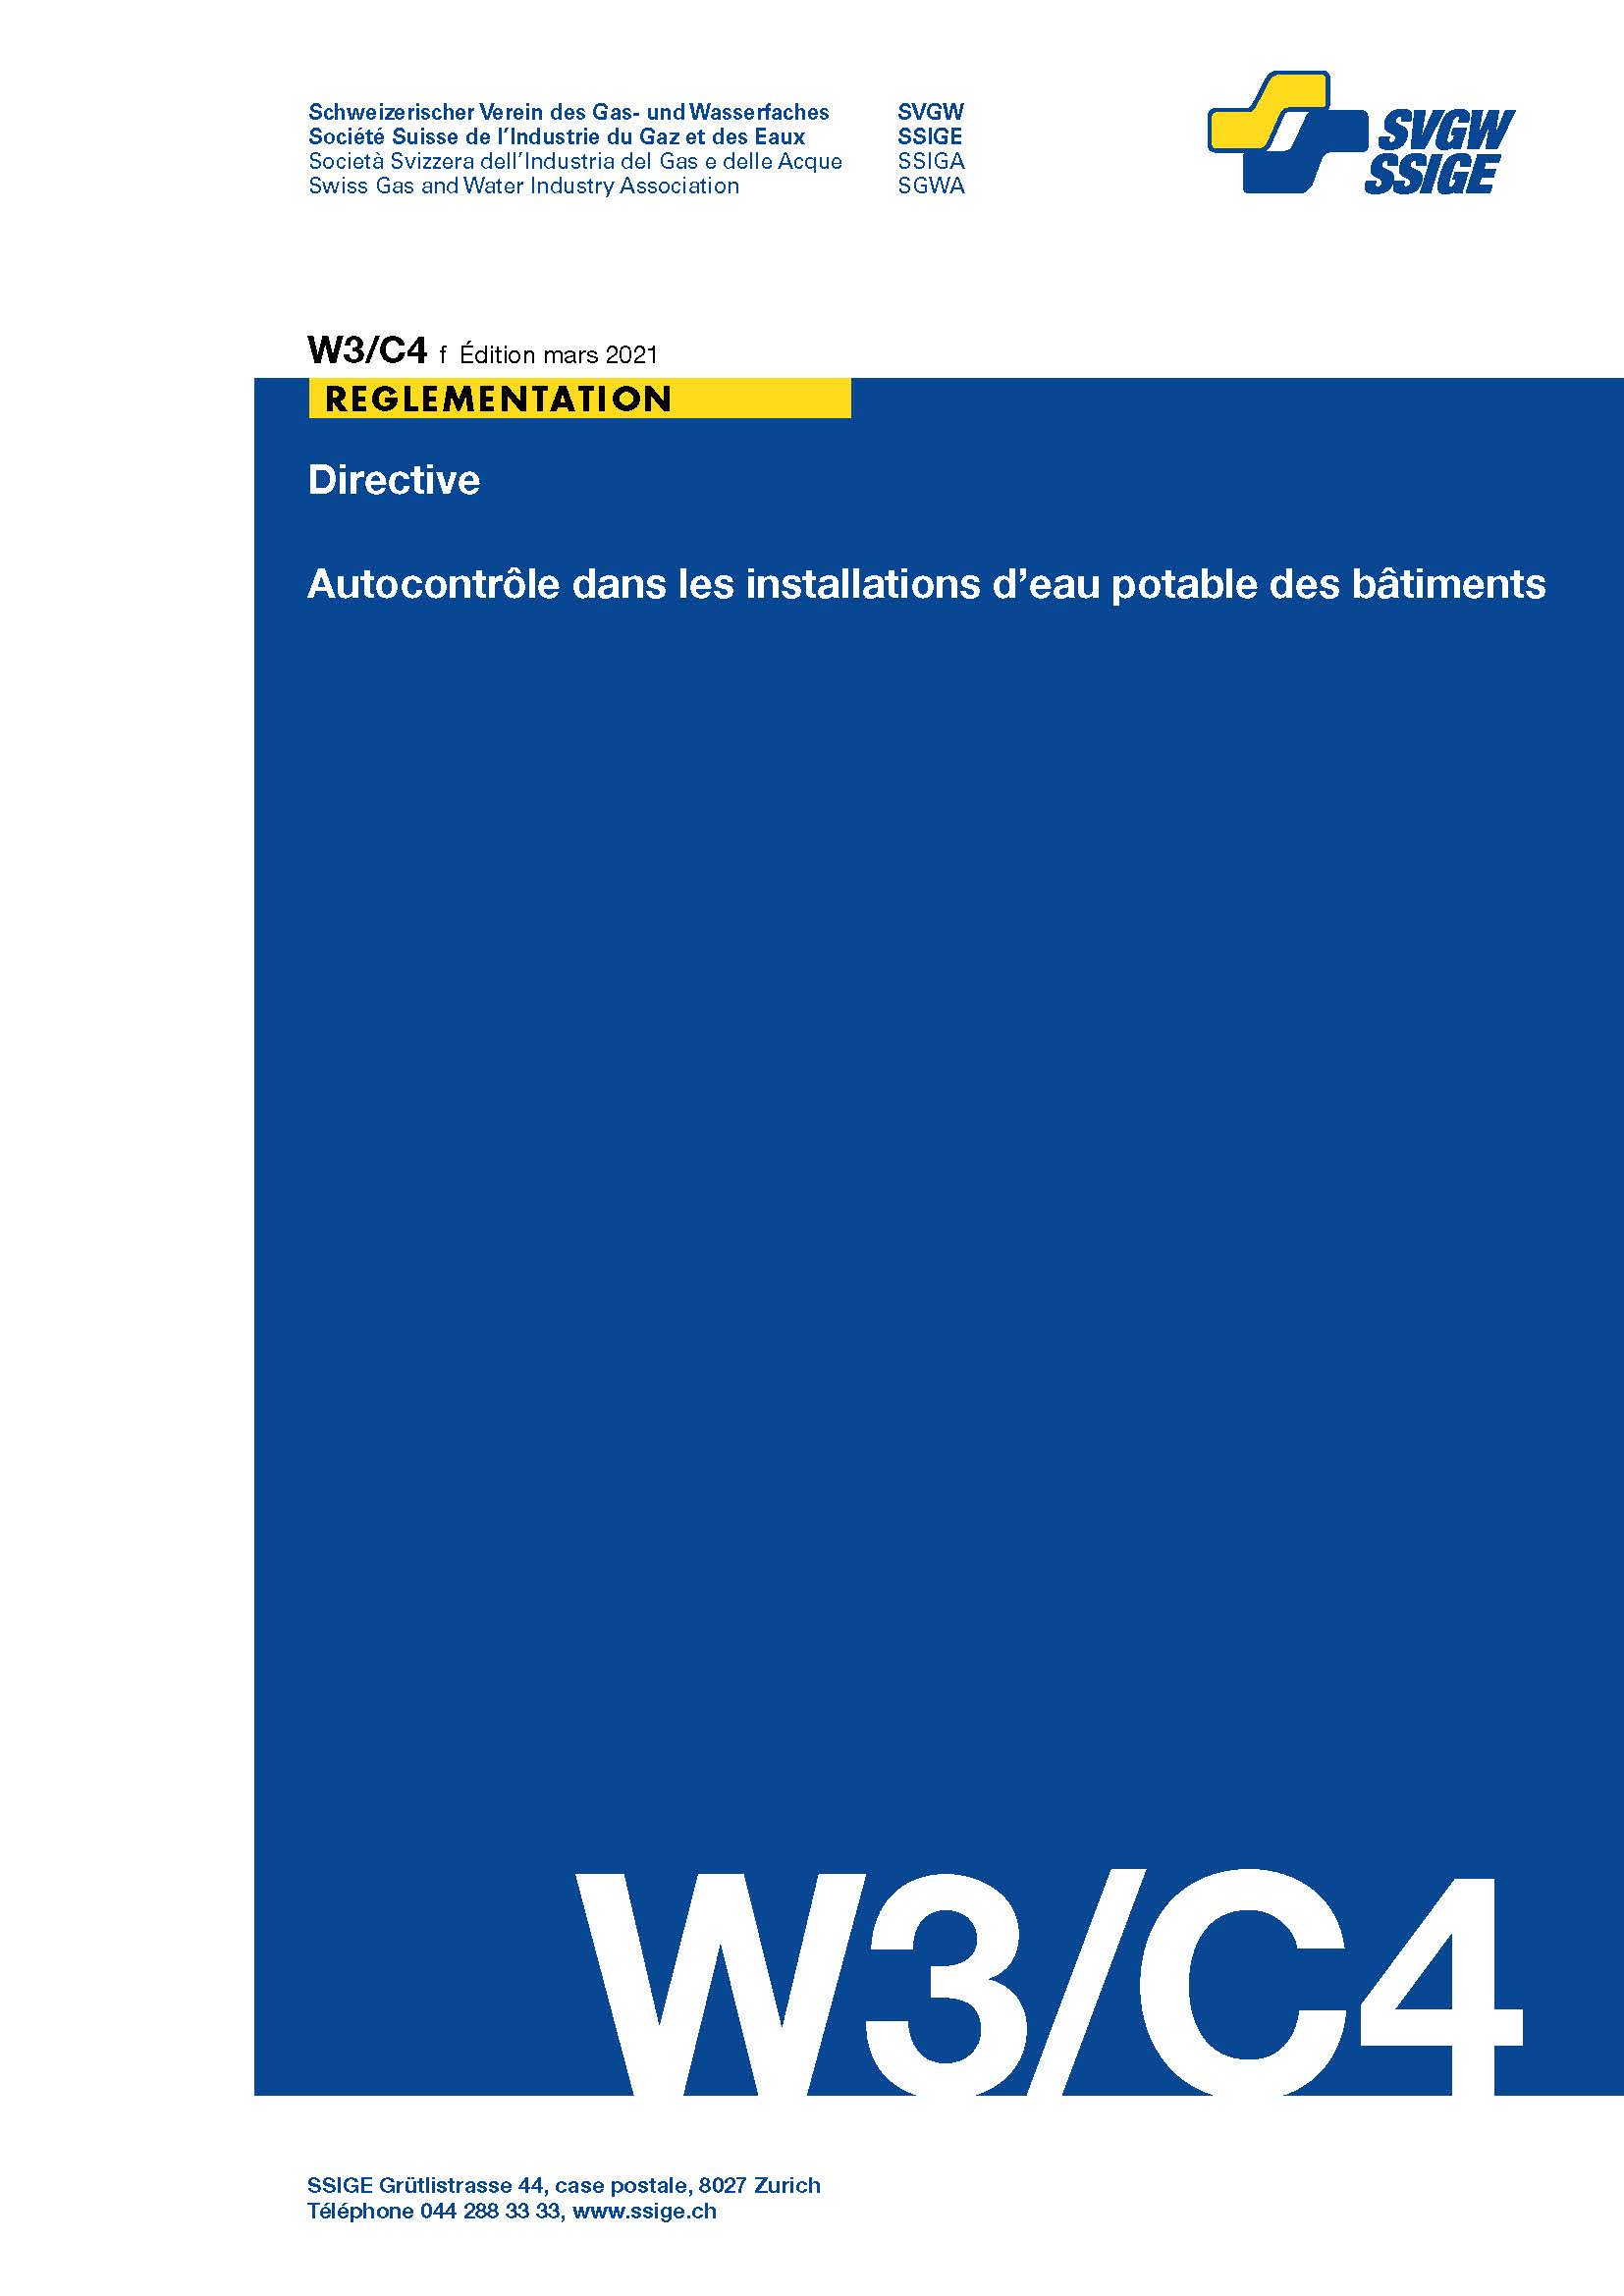 W3/C4 f Directive; Autocontrôle dans les installations d'eau potable des bâtiments (1)